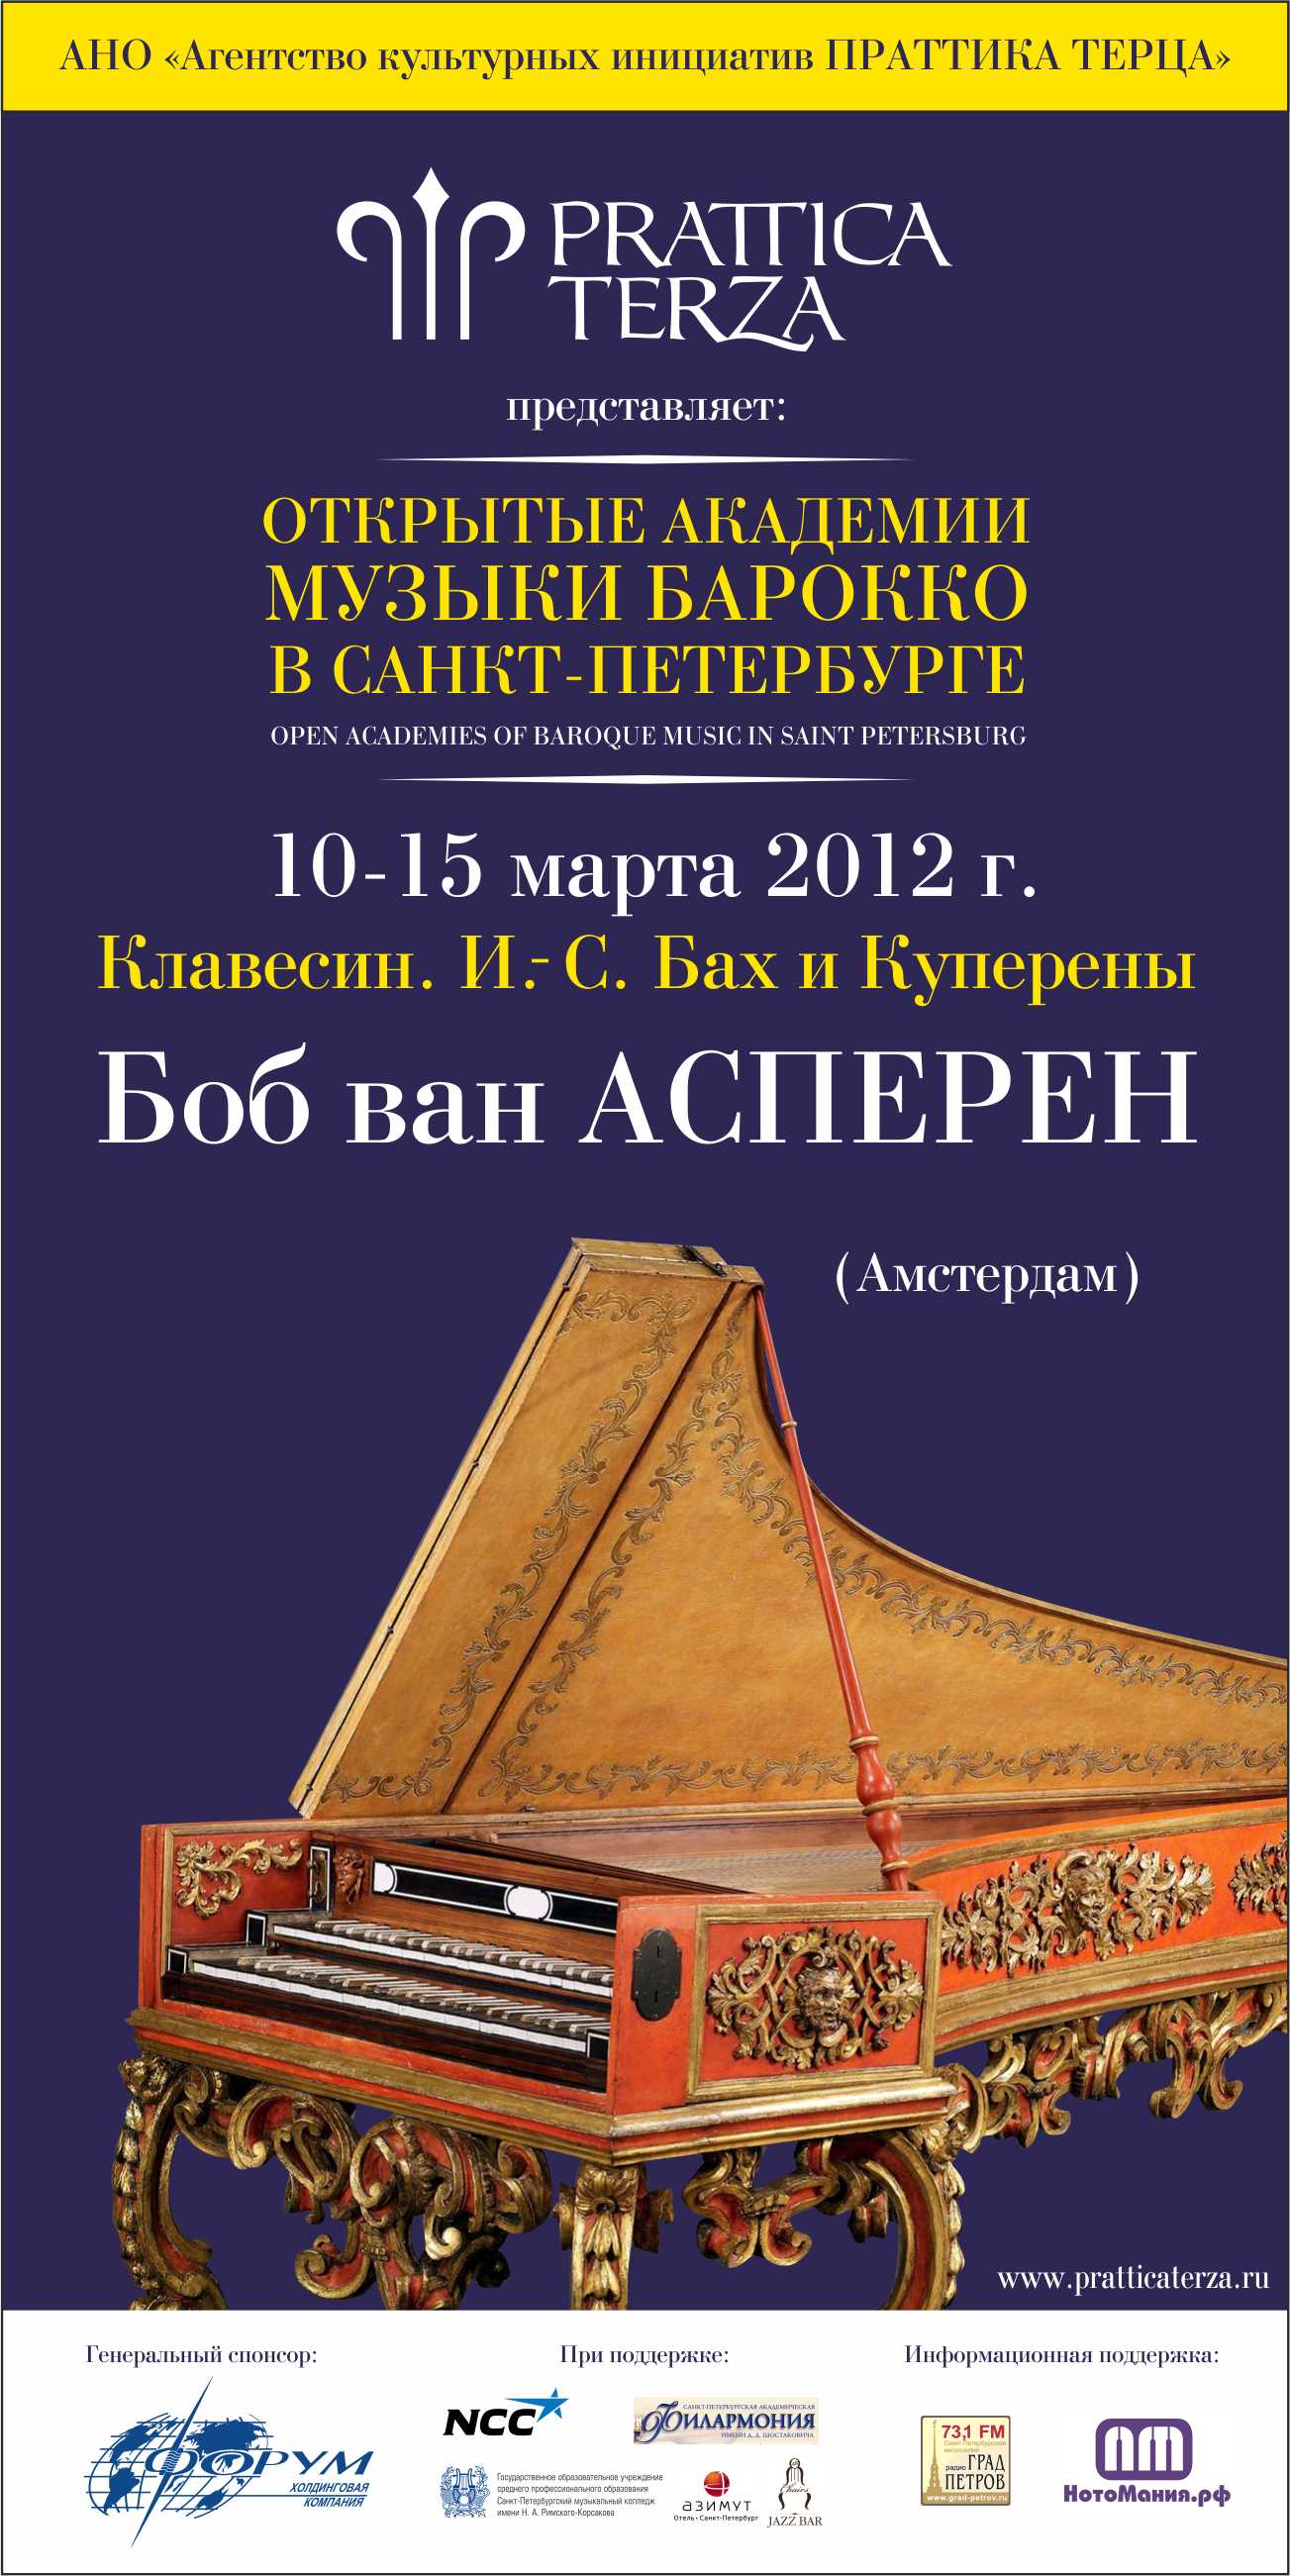 Open academies of baroque music